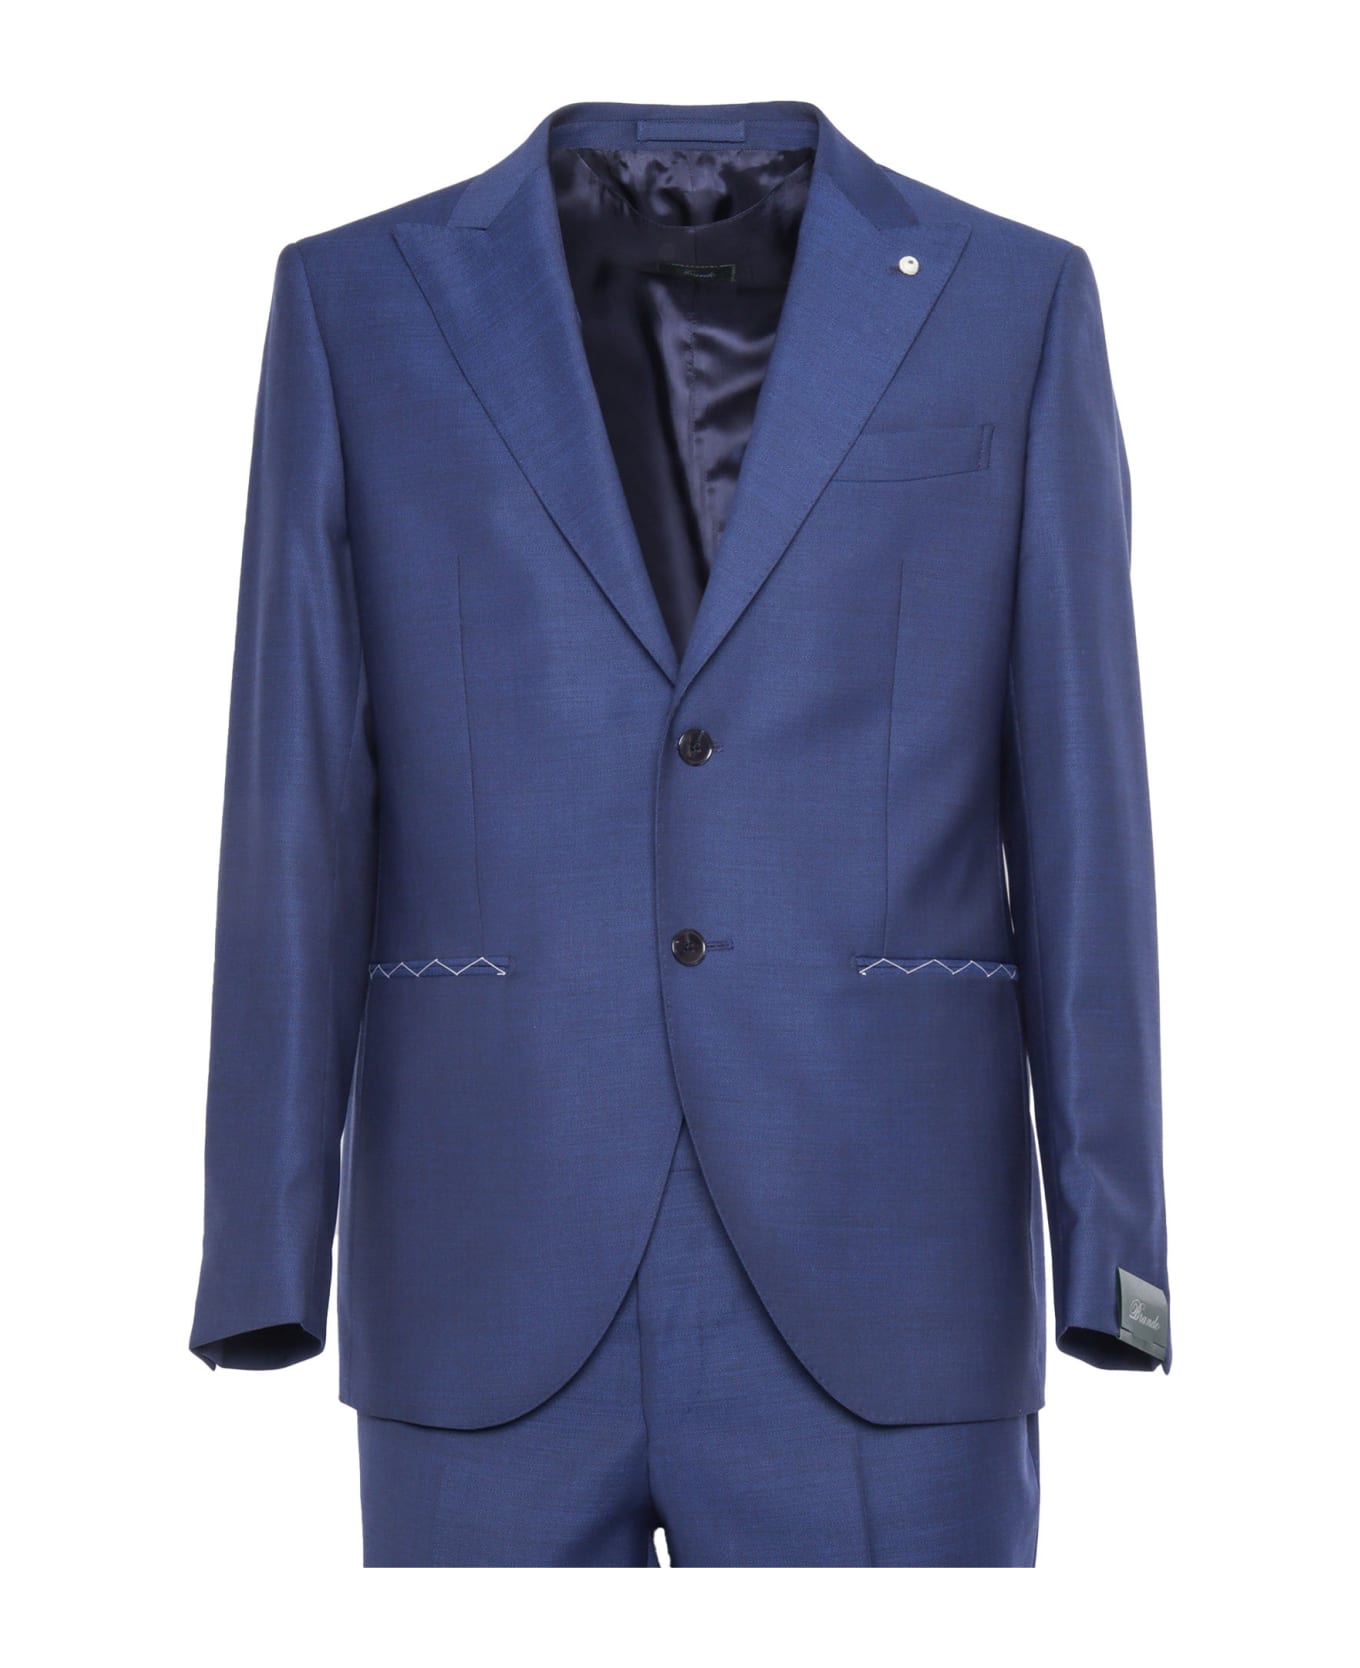 L.B.M. 1911 Formal Dress - BLUE スーツ